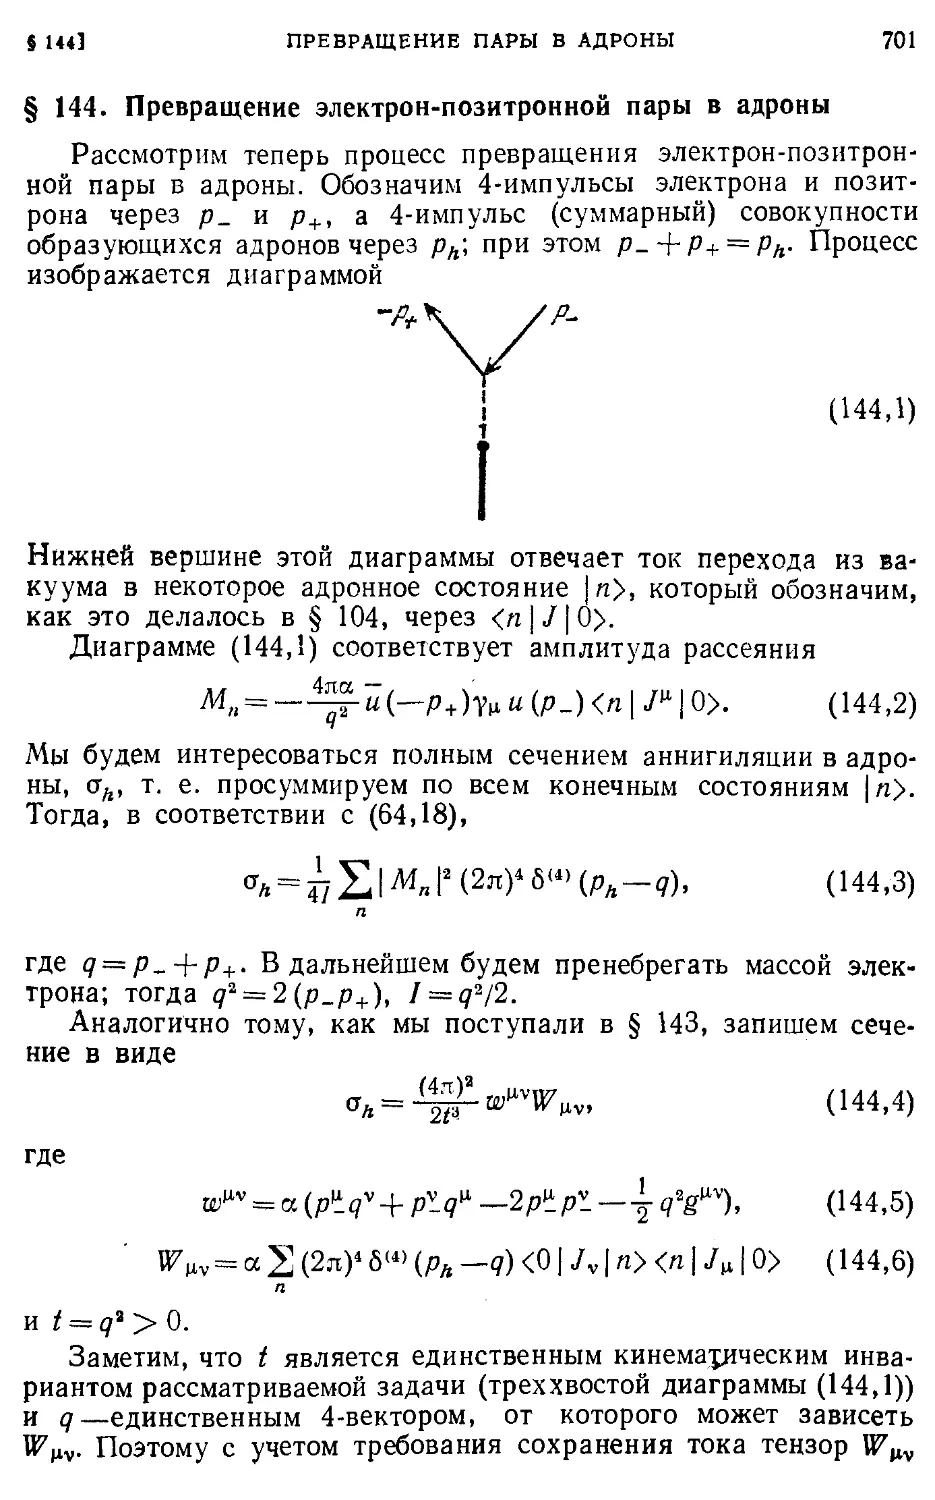 § 144. Превращение электрон-позитронной пары в адроны